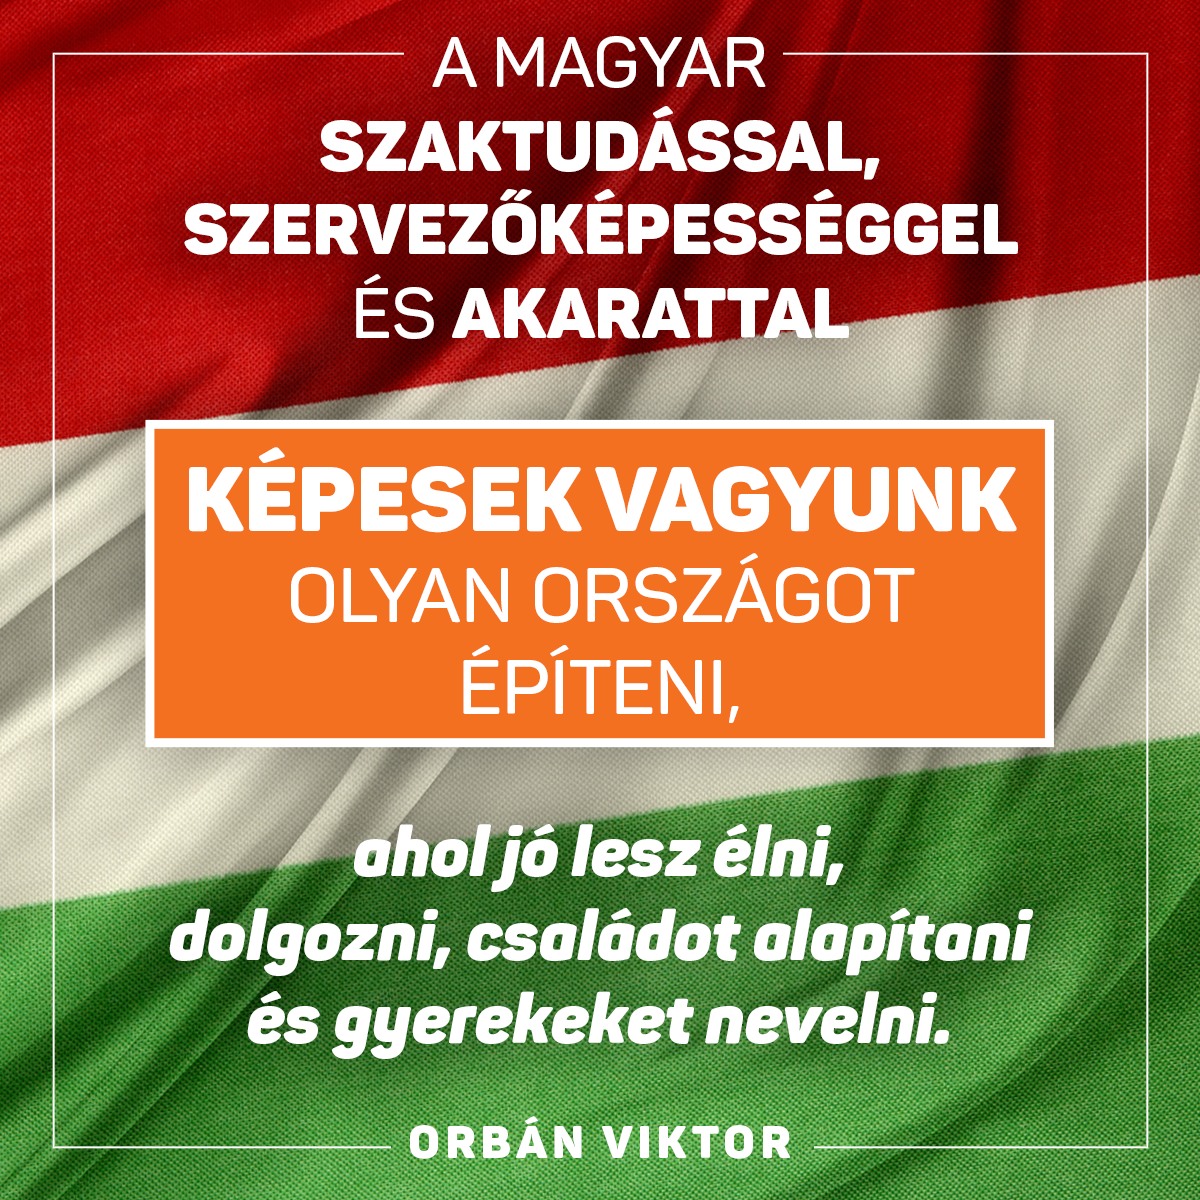 Orbán Viktor miniszterelnök a SZAKMA SZTÁR 2023 rendezvényen: